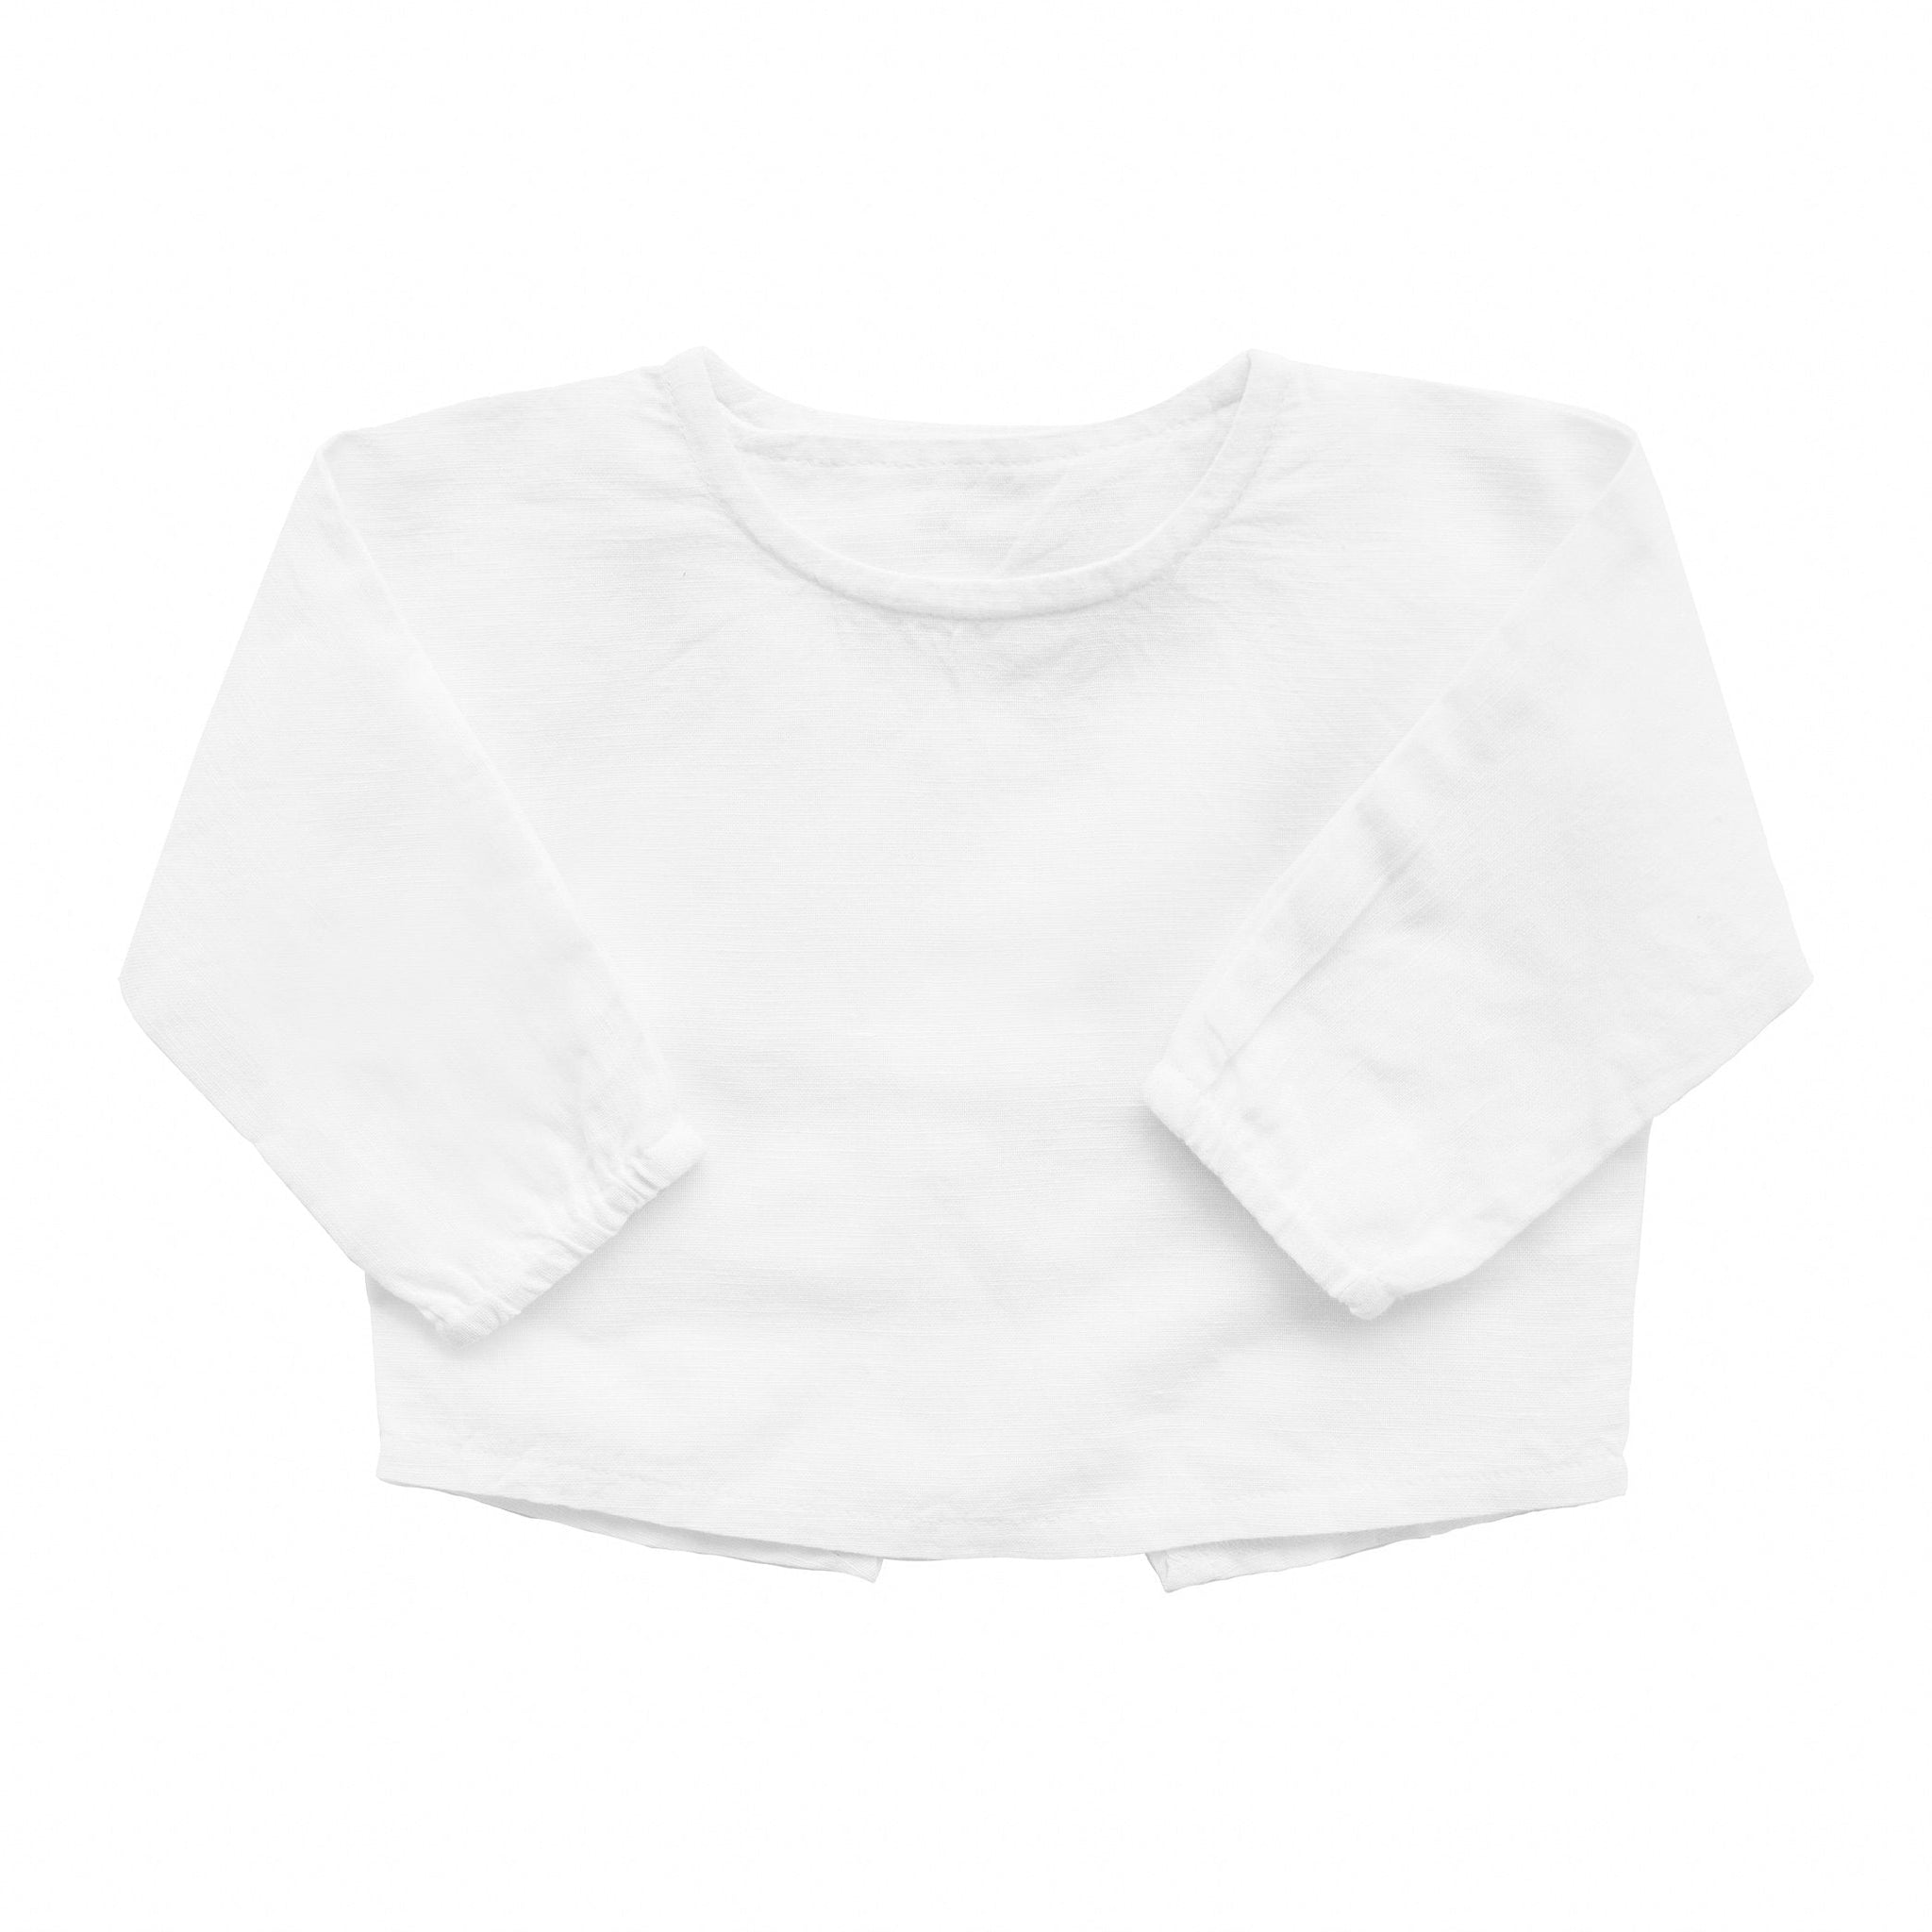 Easter monogram double button shirt | white linen - HoneyBug 